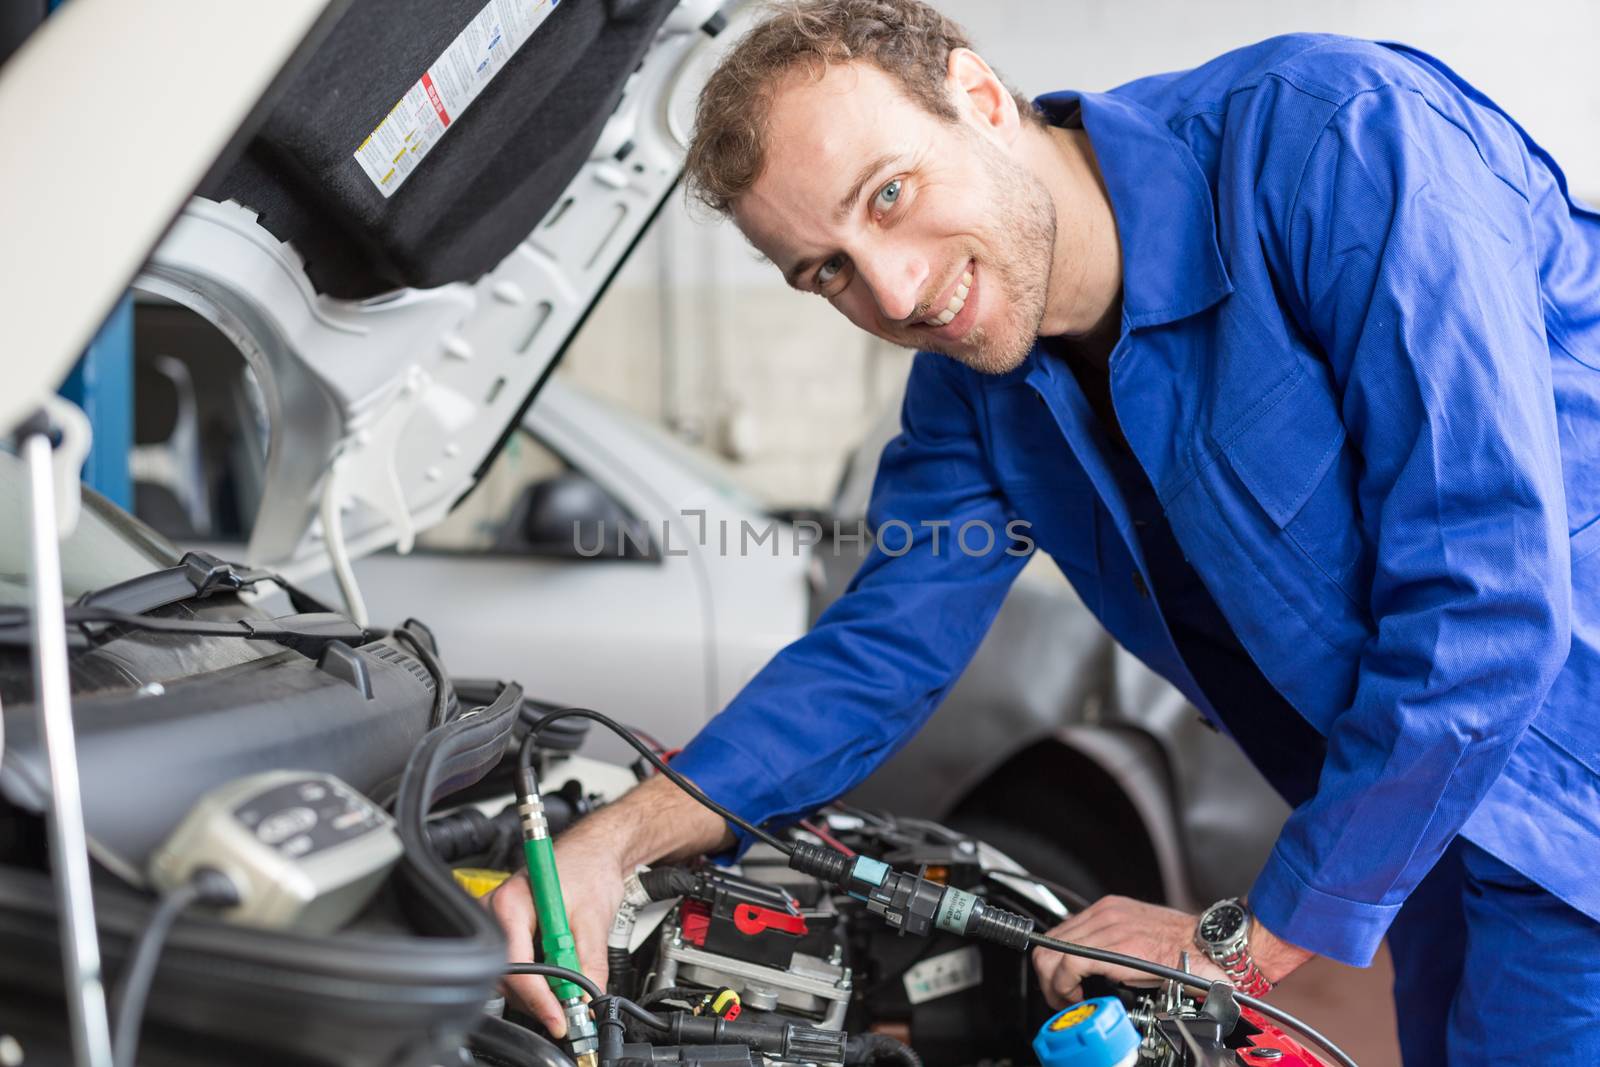 Mechanic repairing a car in a workshop or garage by ikonoklast_fotografie